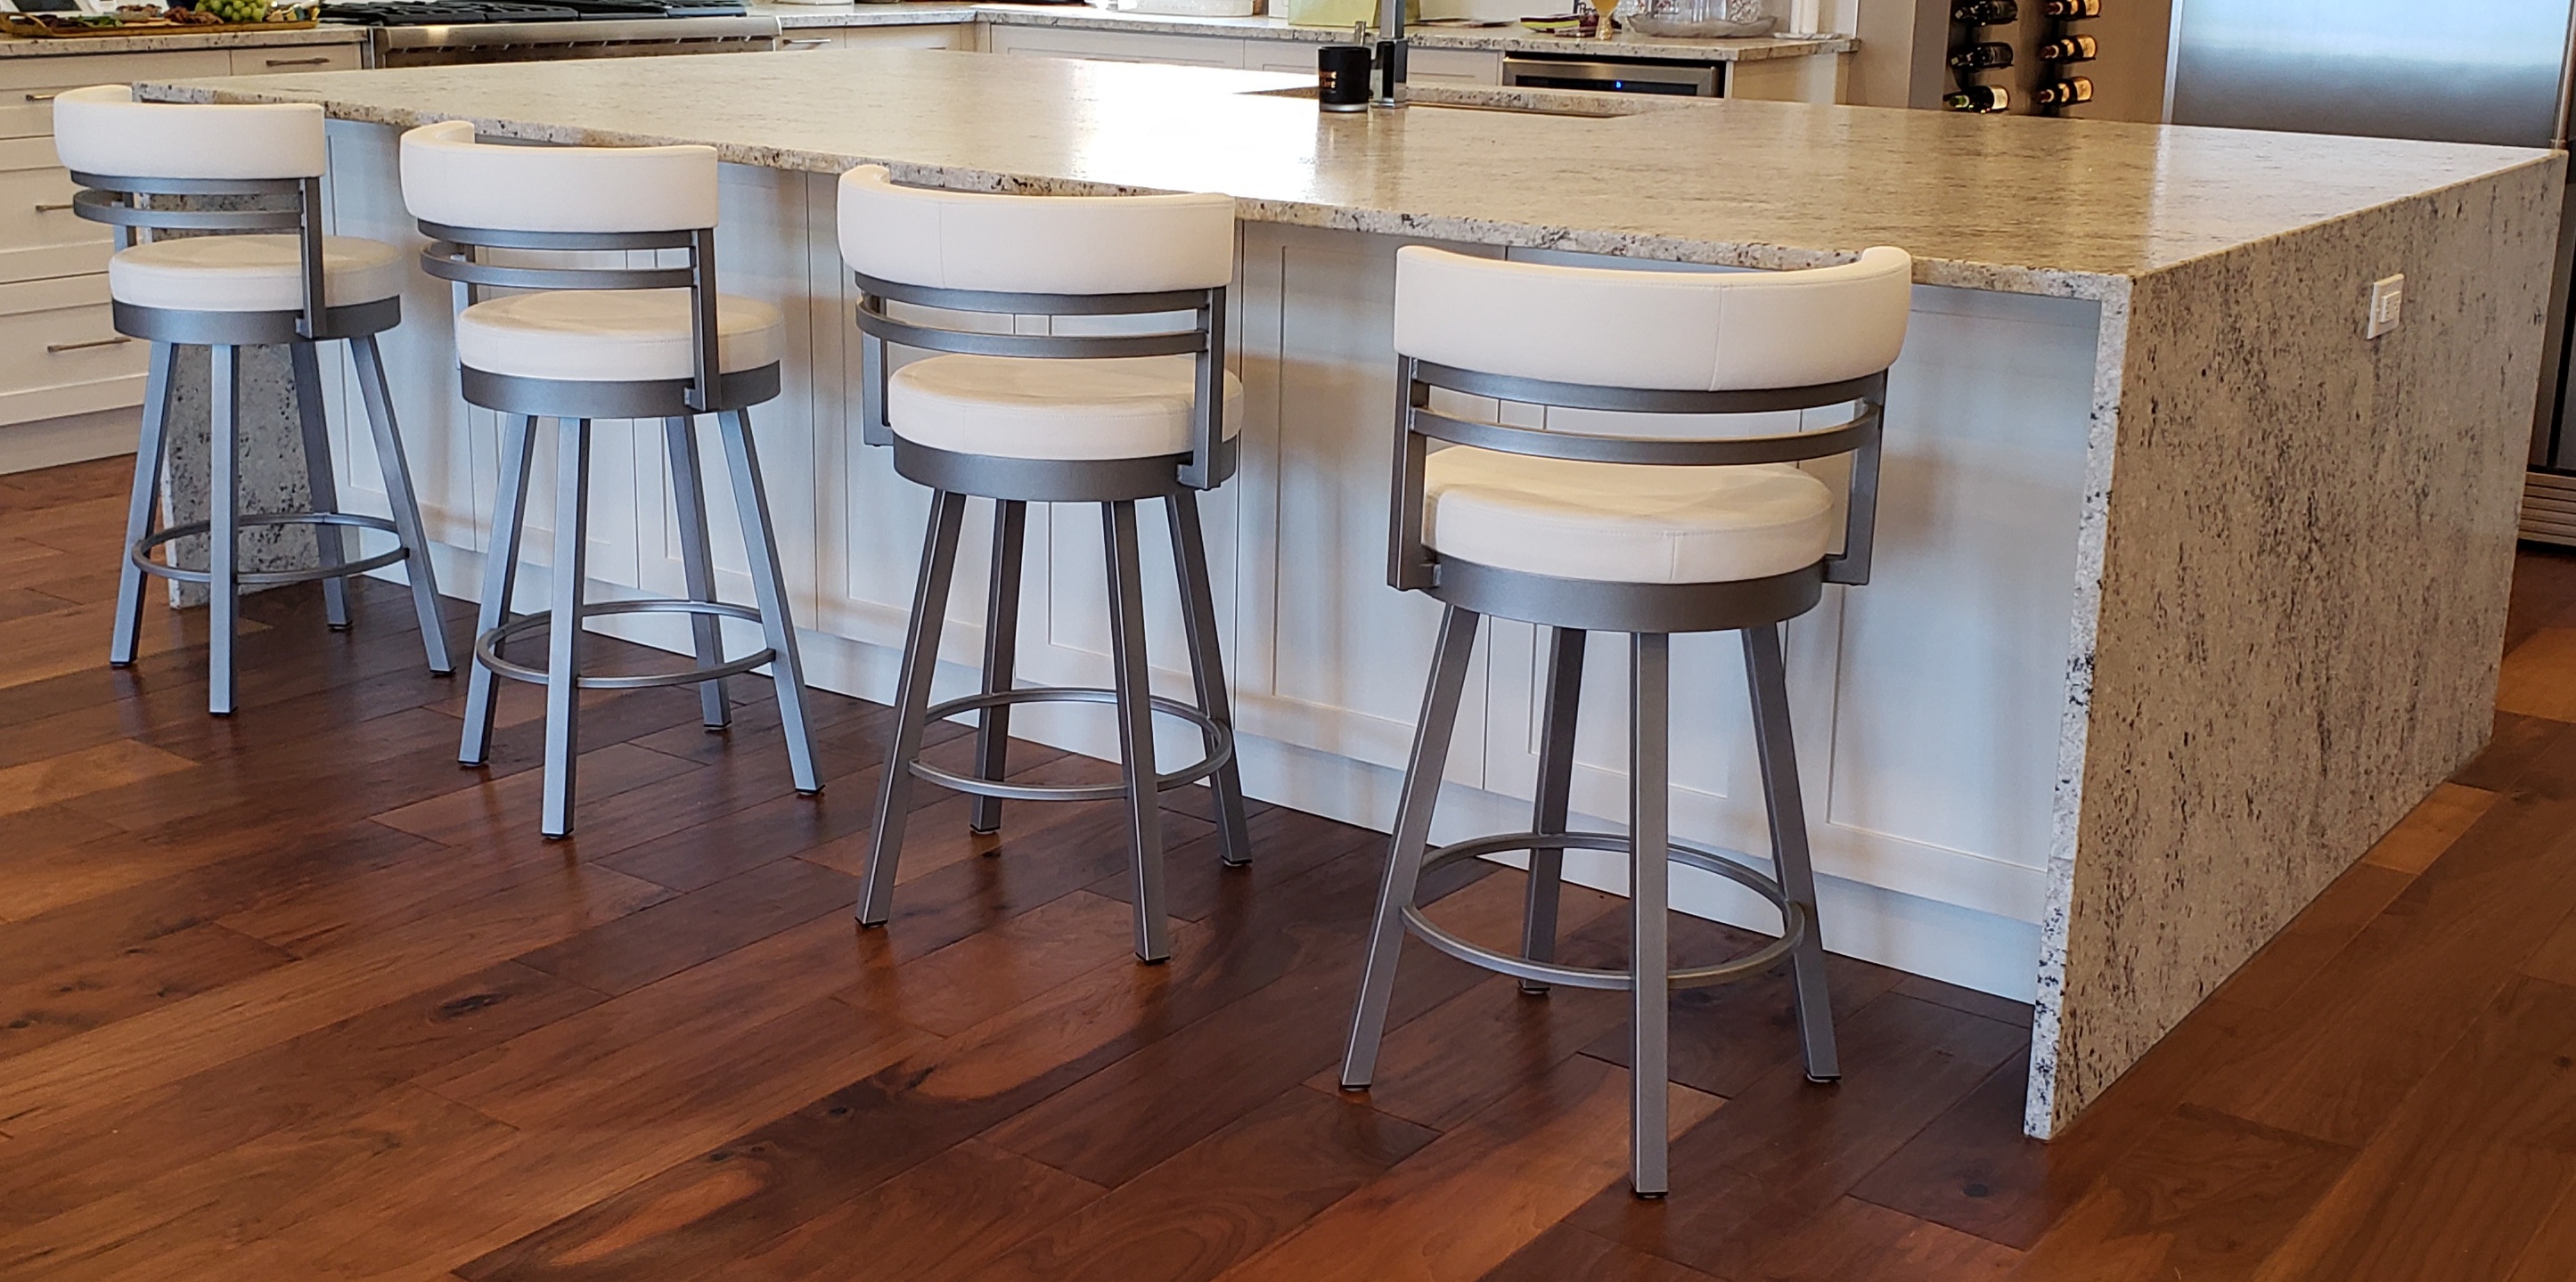 kitchen bar stools seat height